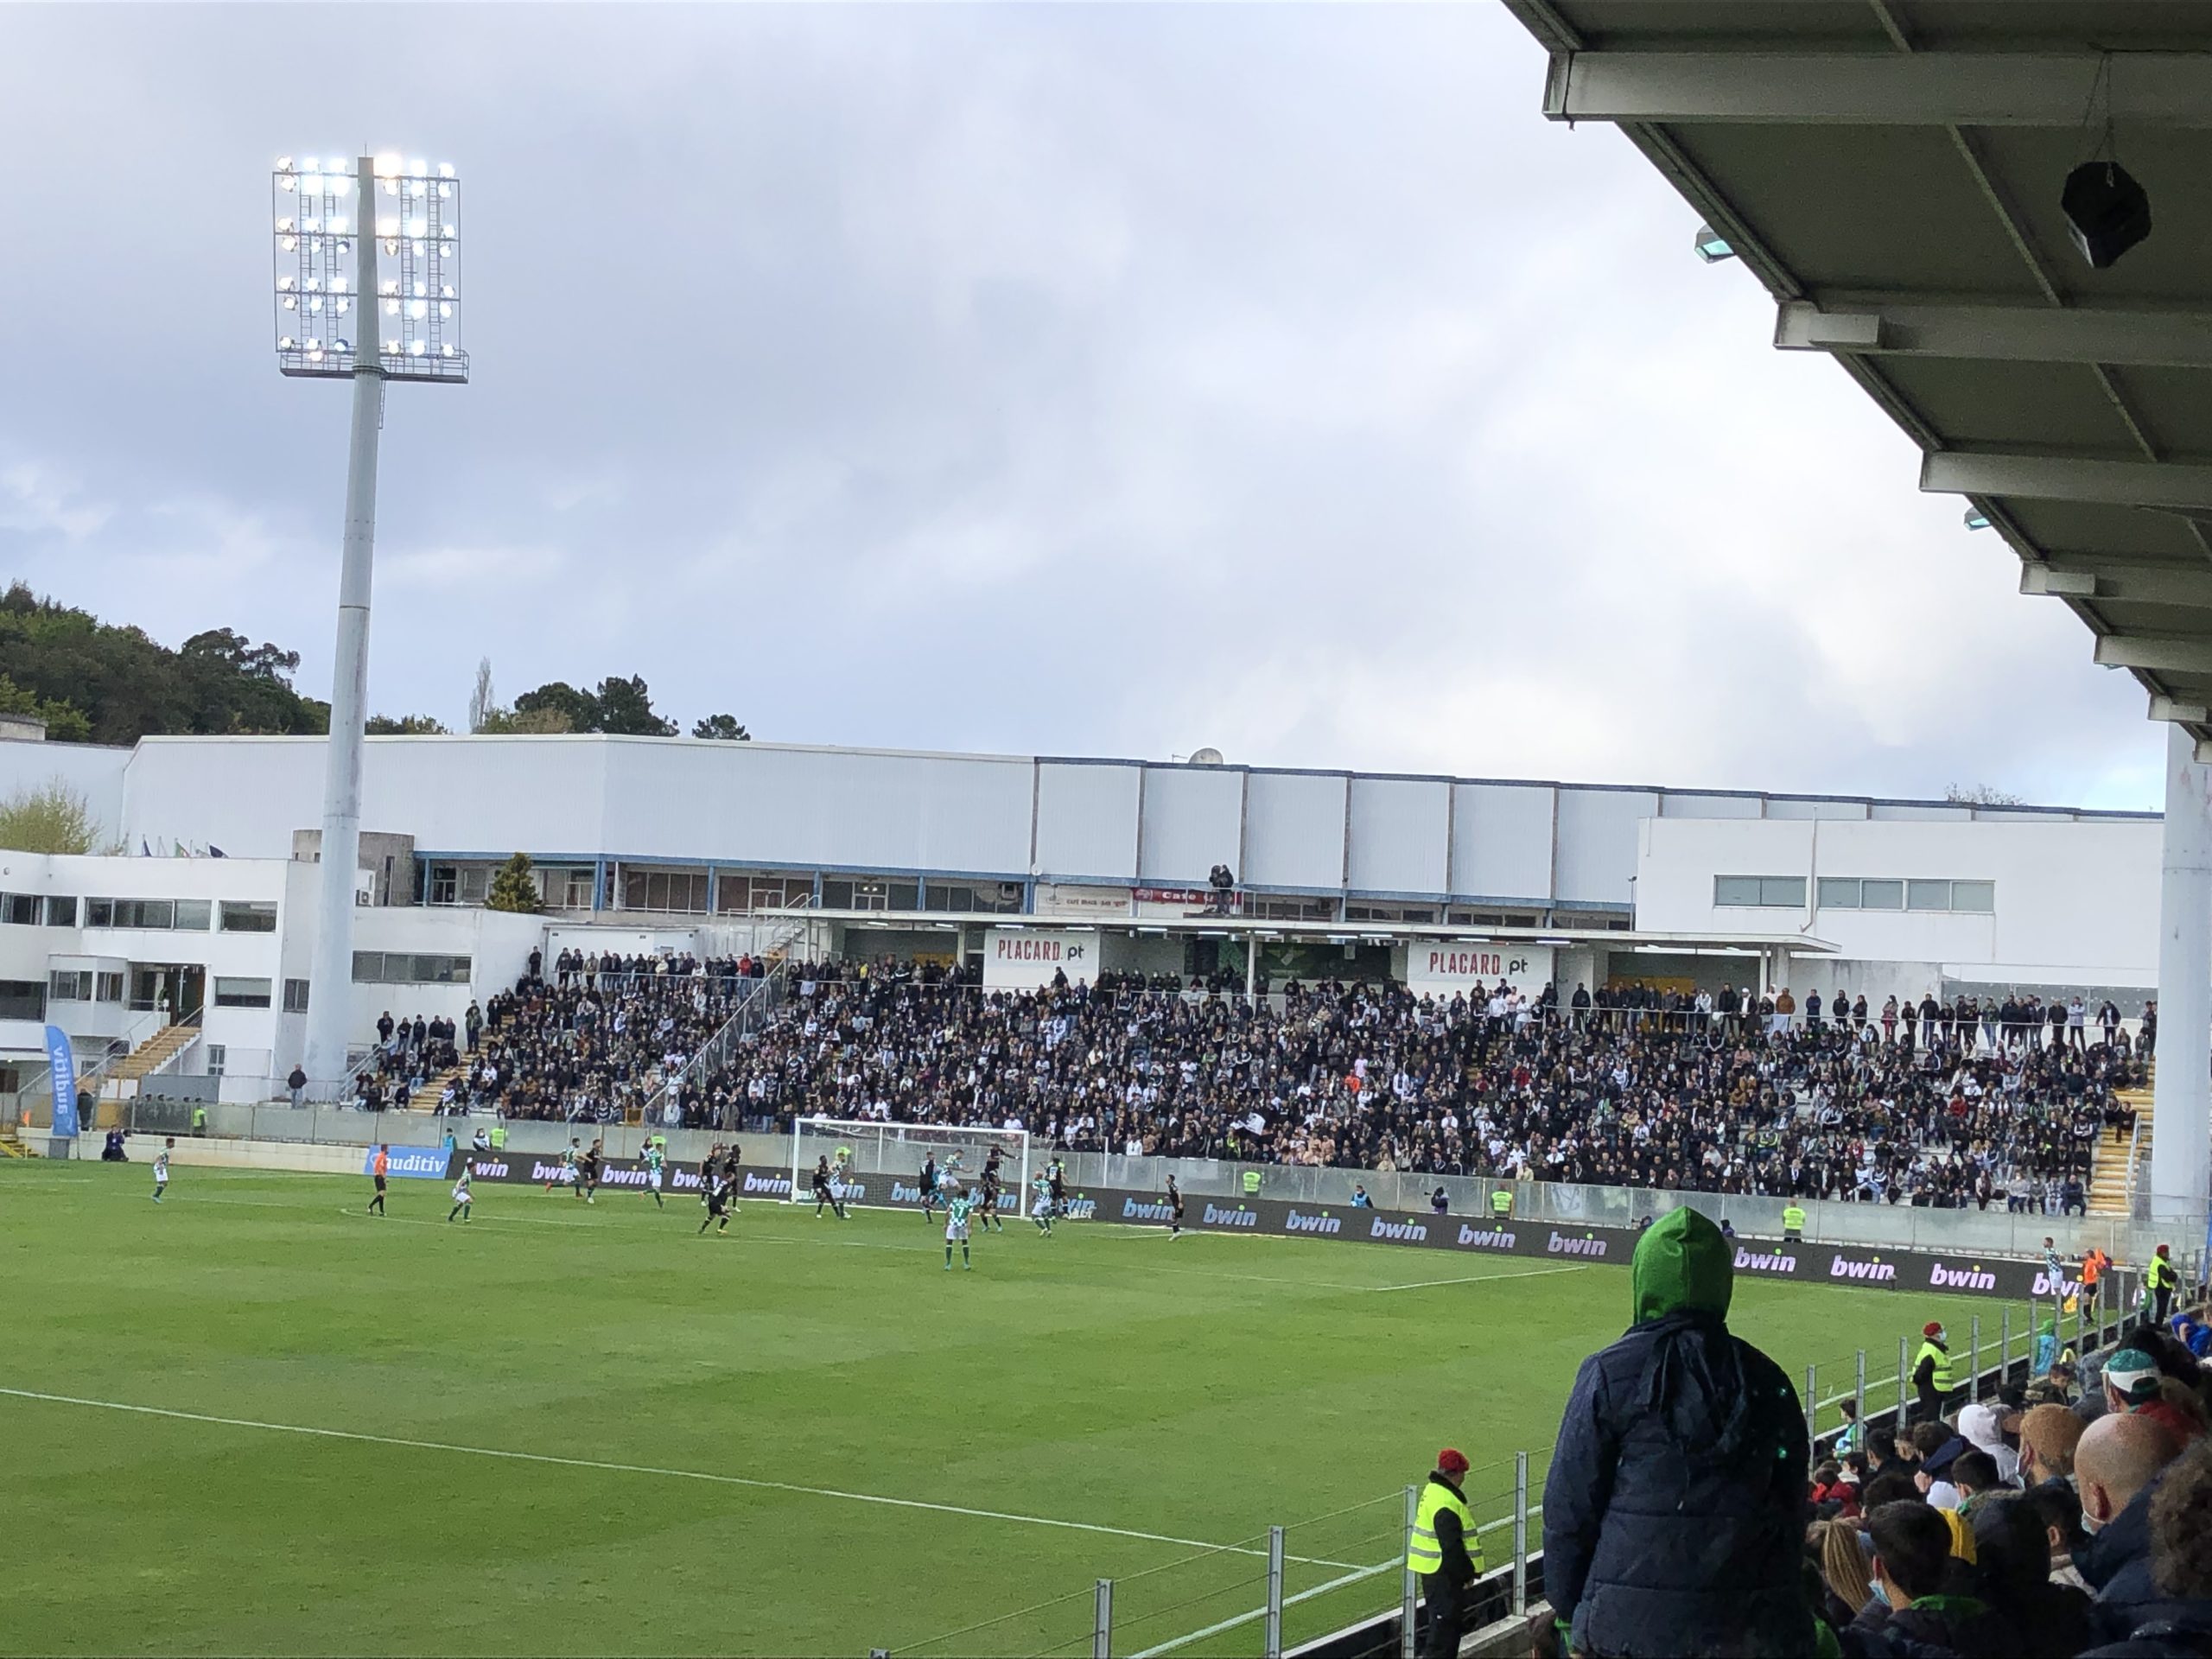 Guimarães, 12/31/2022 - Moreirense Futebol Clube received Club Football  Estrela this afternoon at the Comendador Joaquim de Almeida Freitas Stadium  in a game counting for the 14th round of the 2 Liga